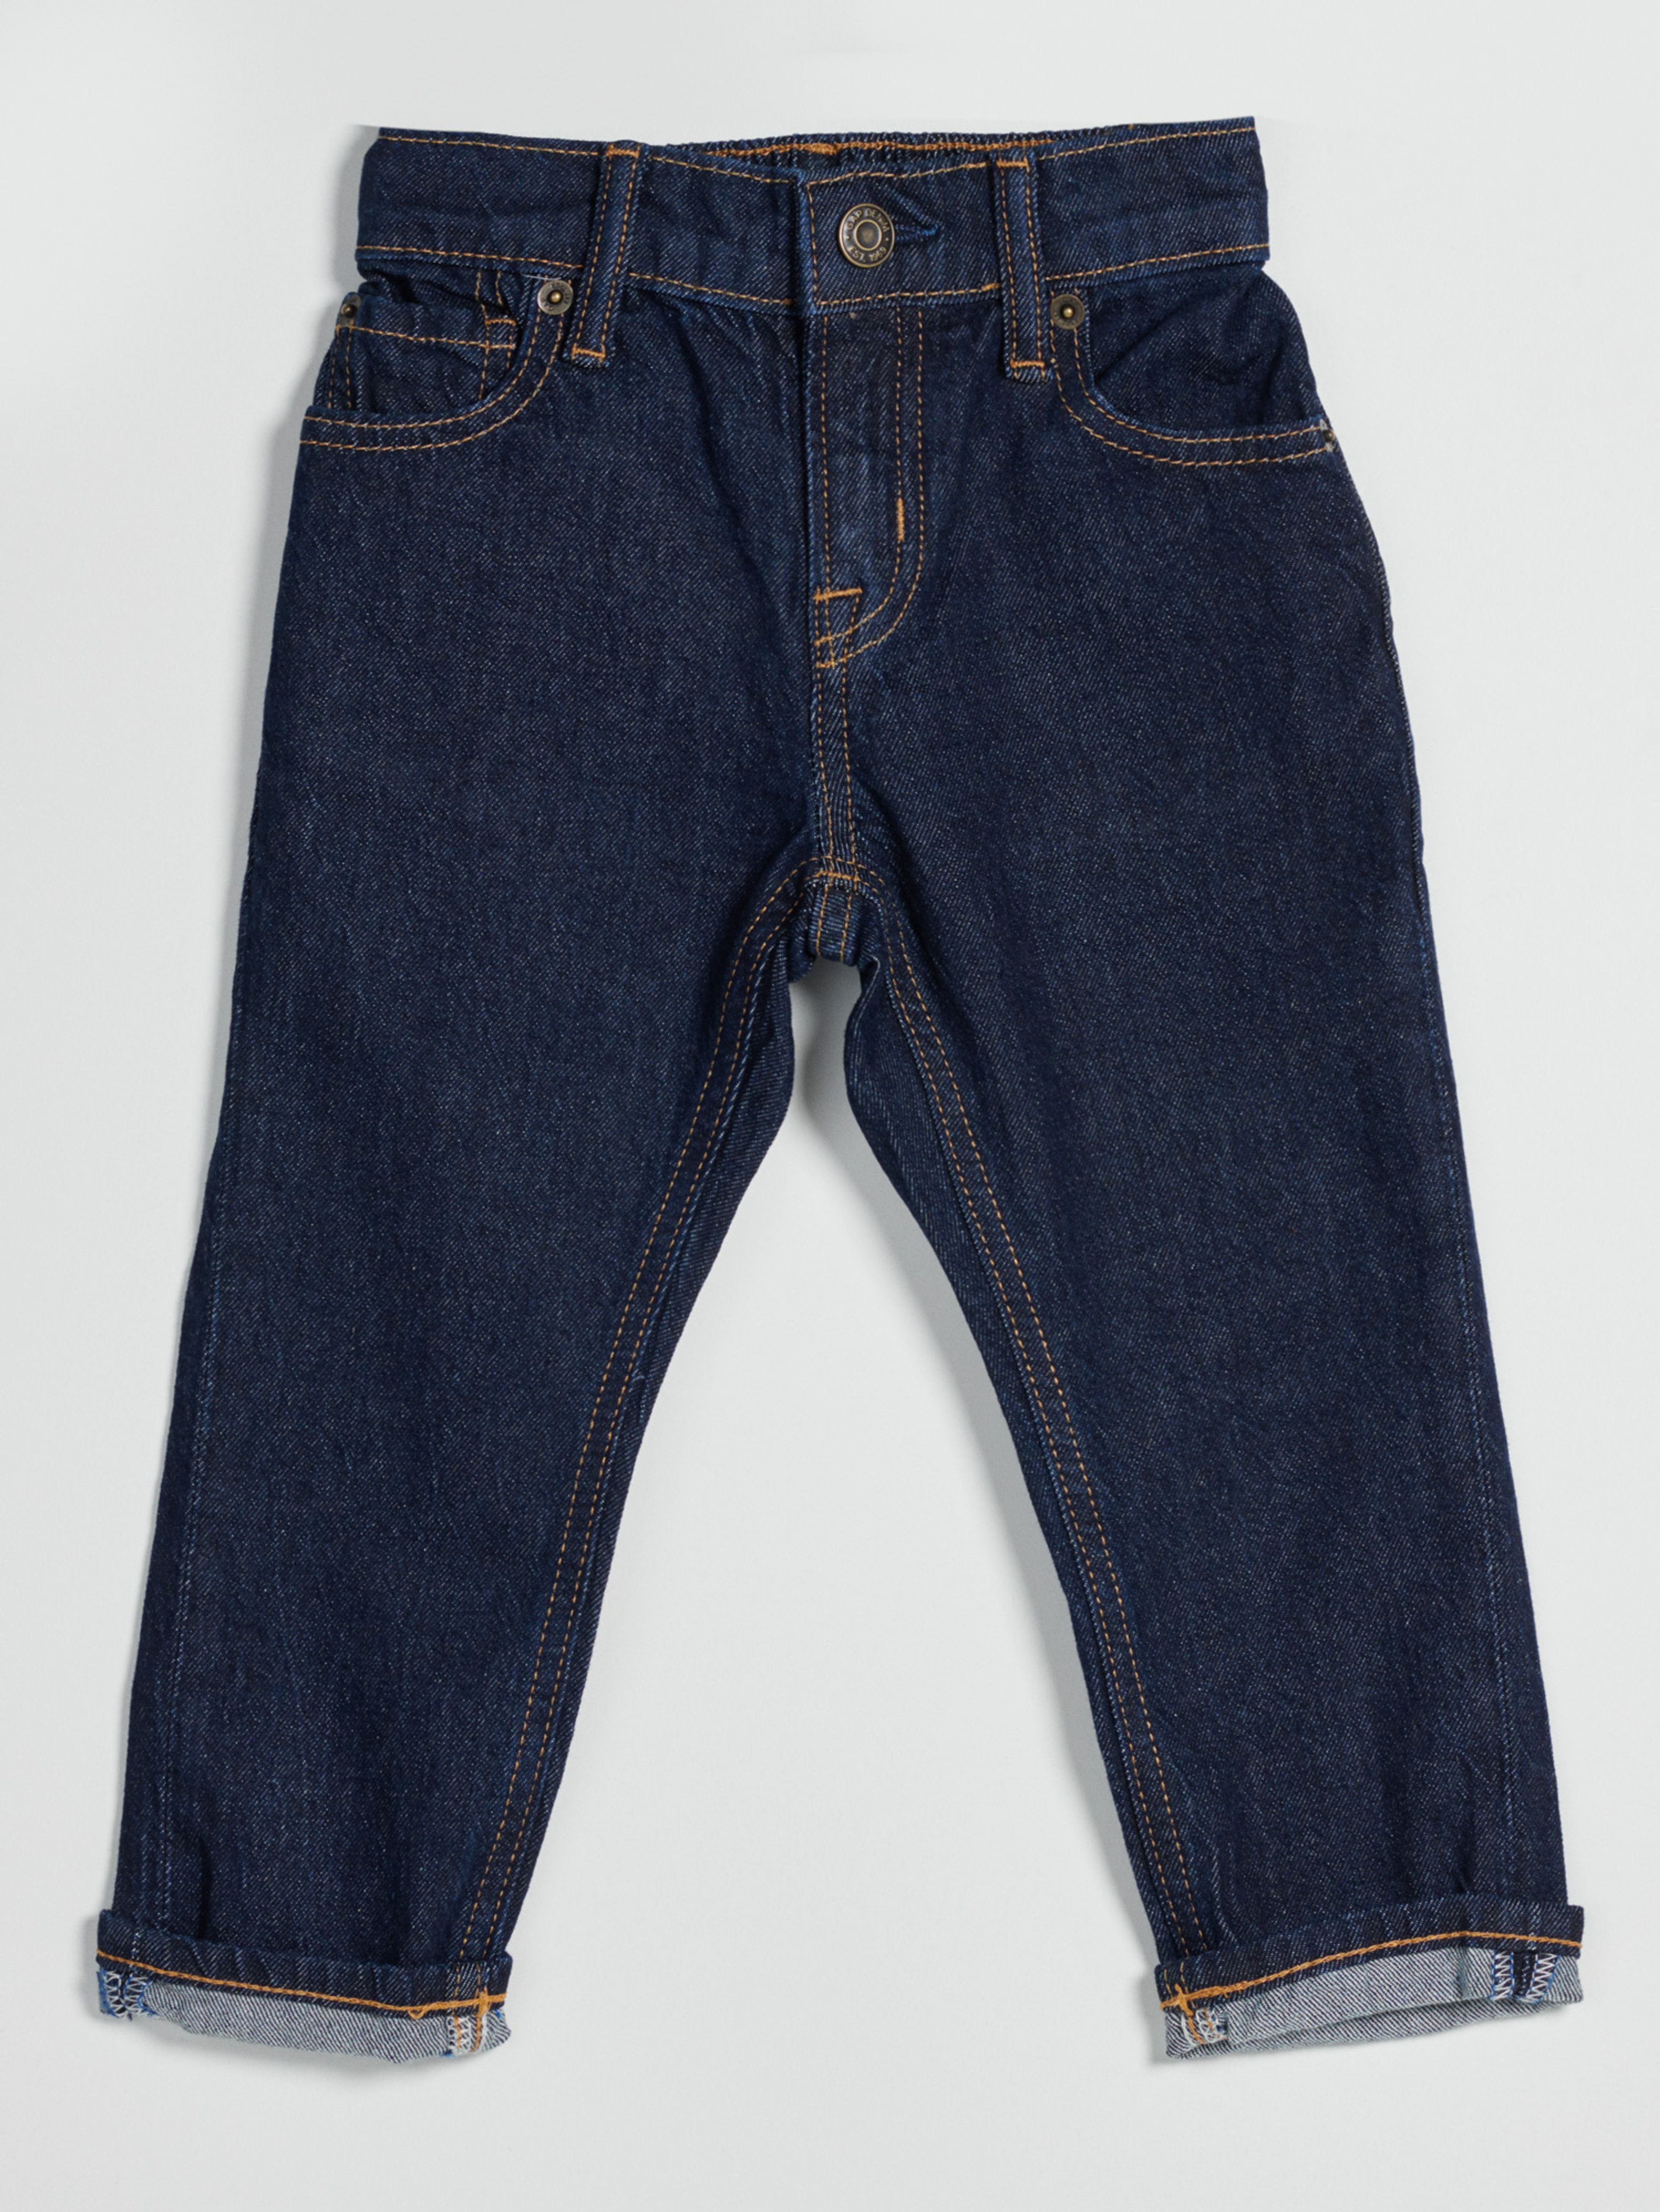 Kinder-Jeans easy taper